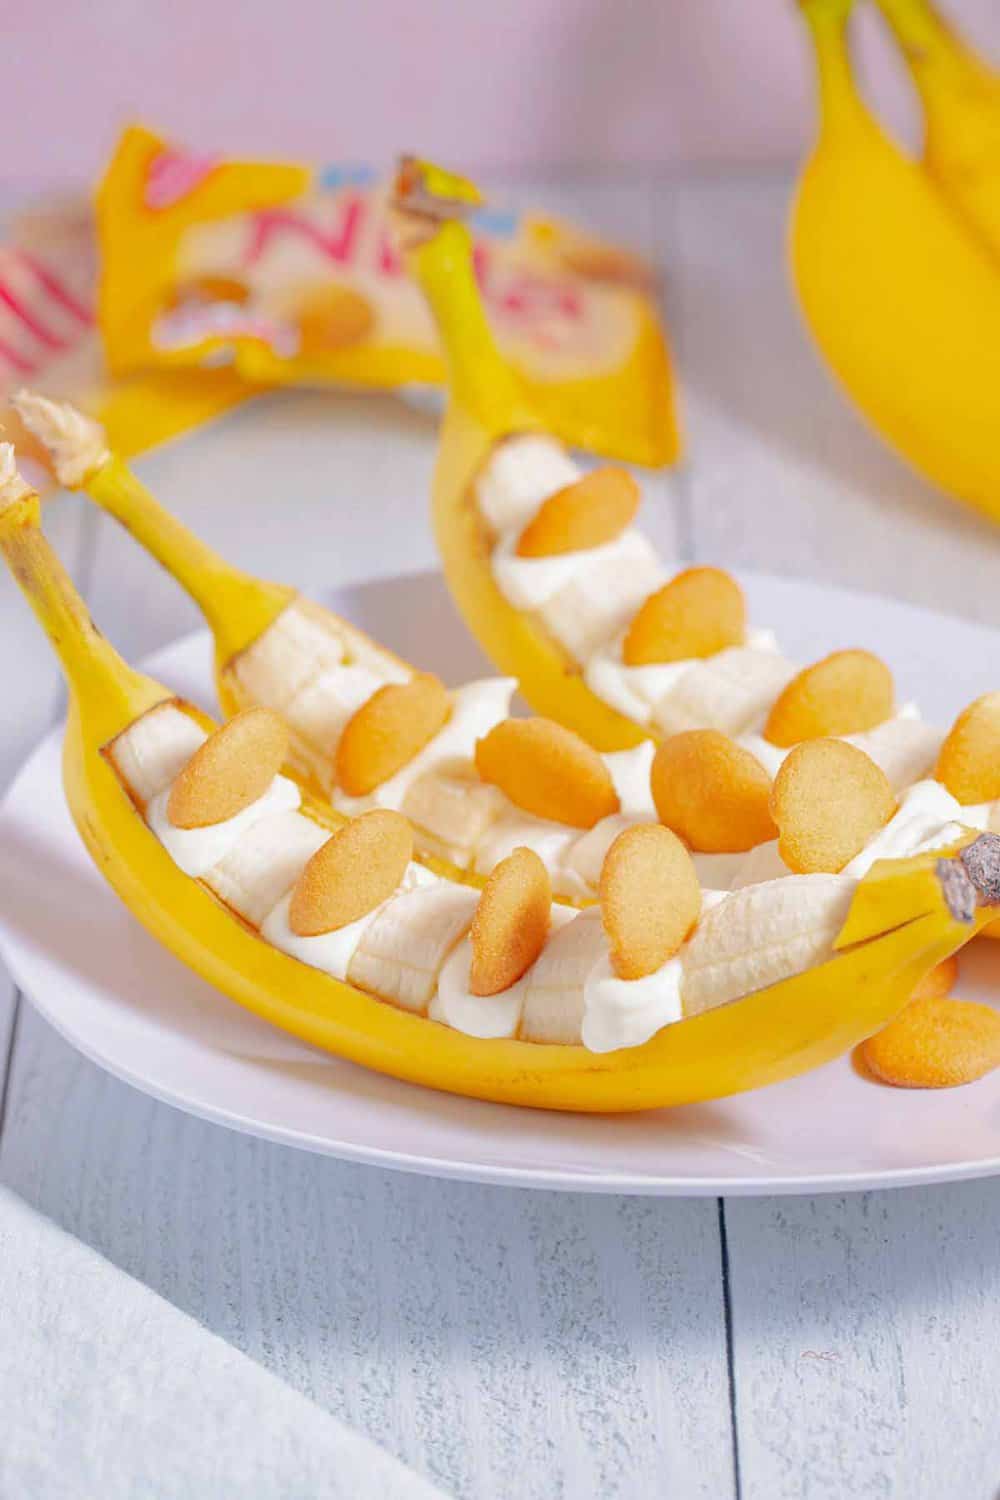 serving banana pudding in a banana peel